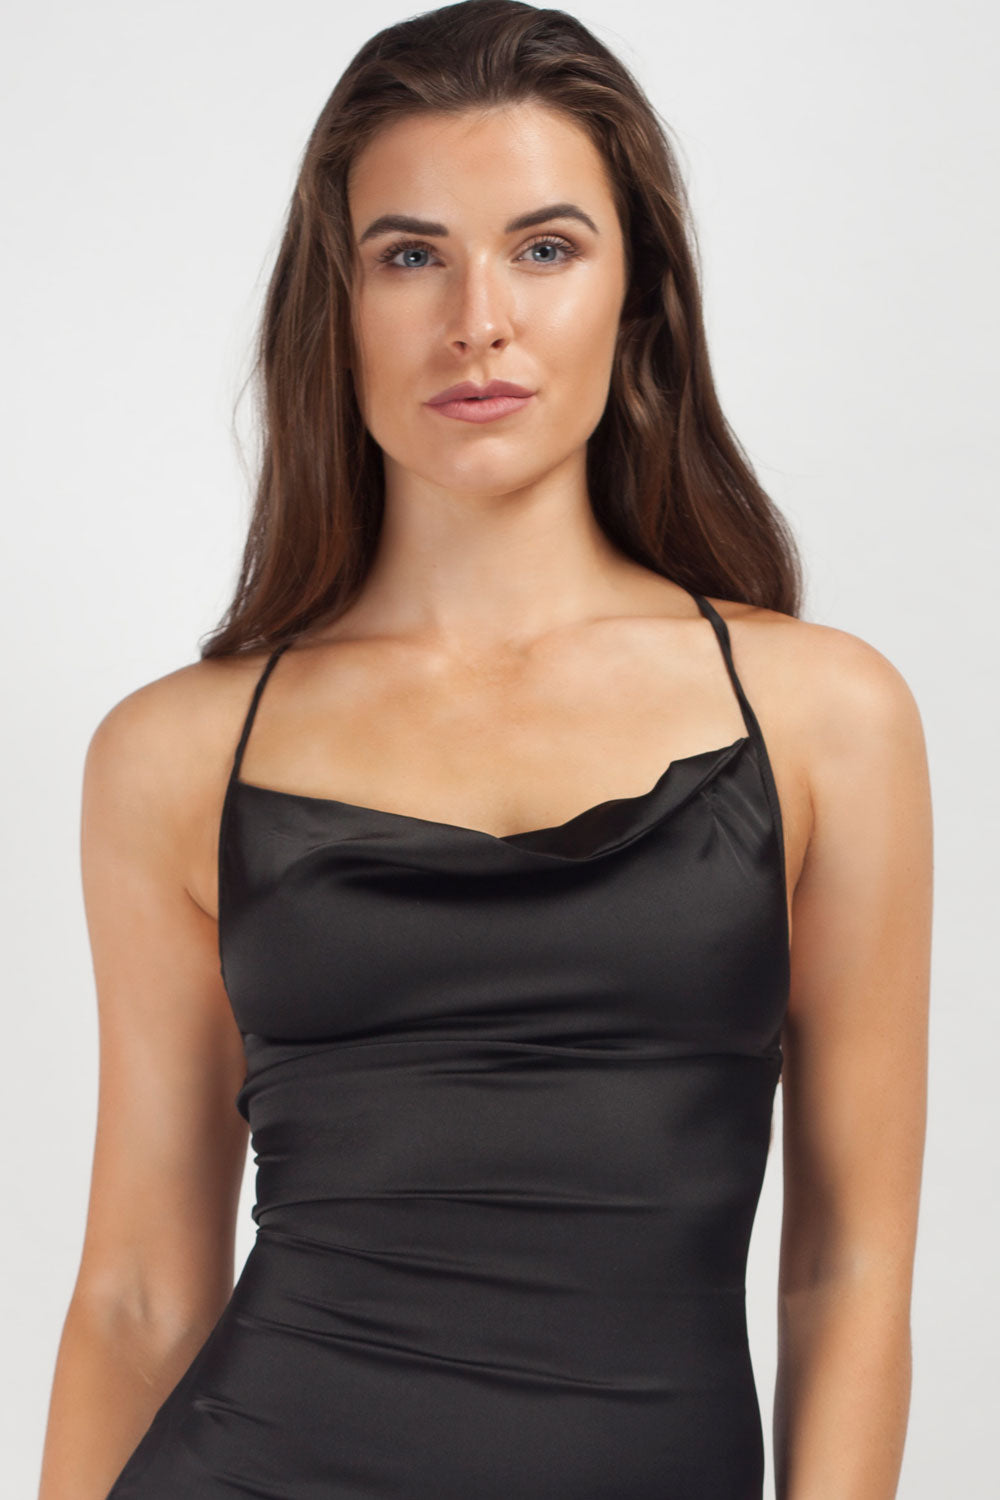 Black Satin Cowl Neck Mini Dress Size 6 12 Uk 4328